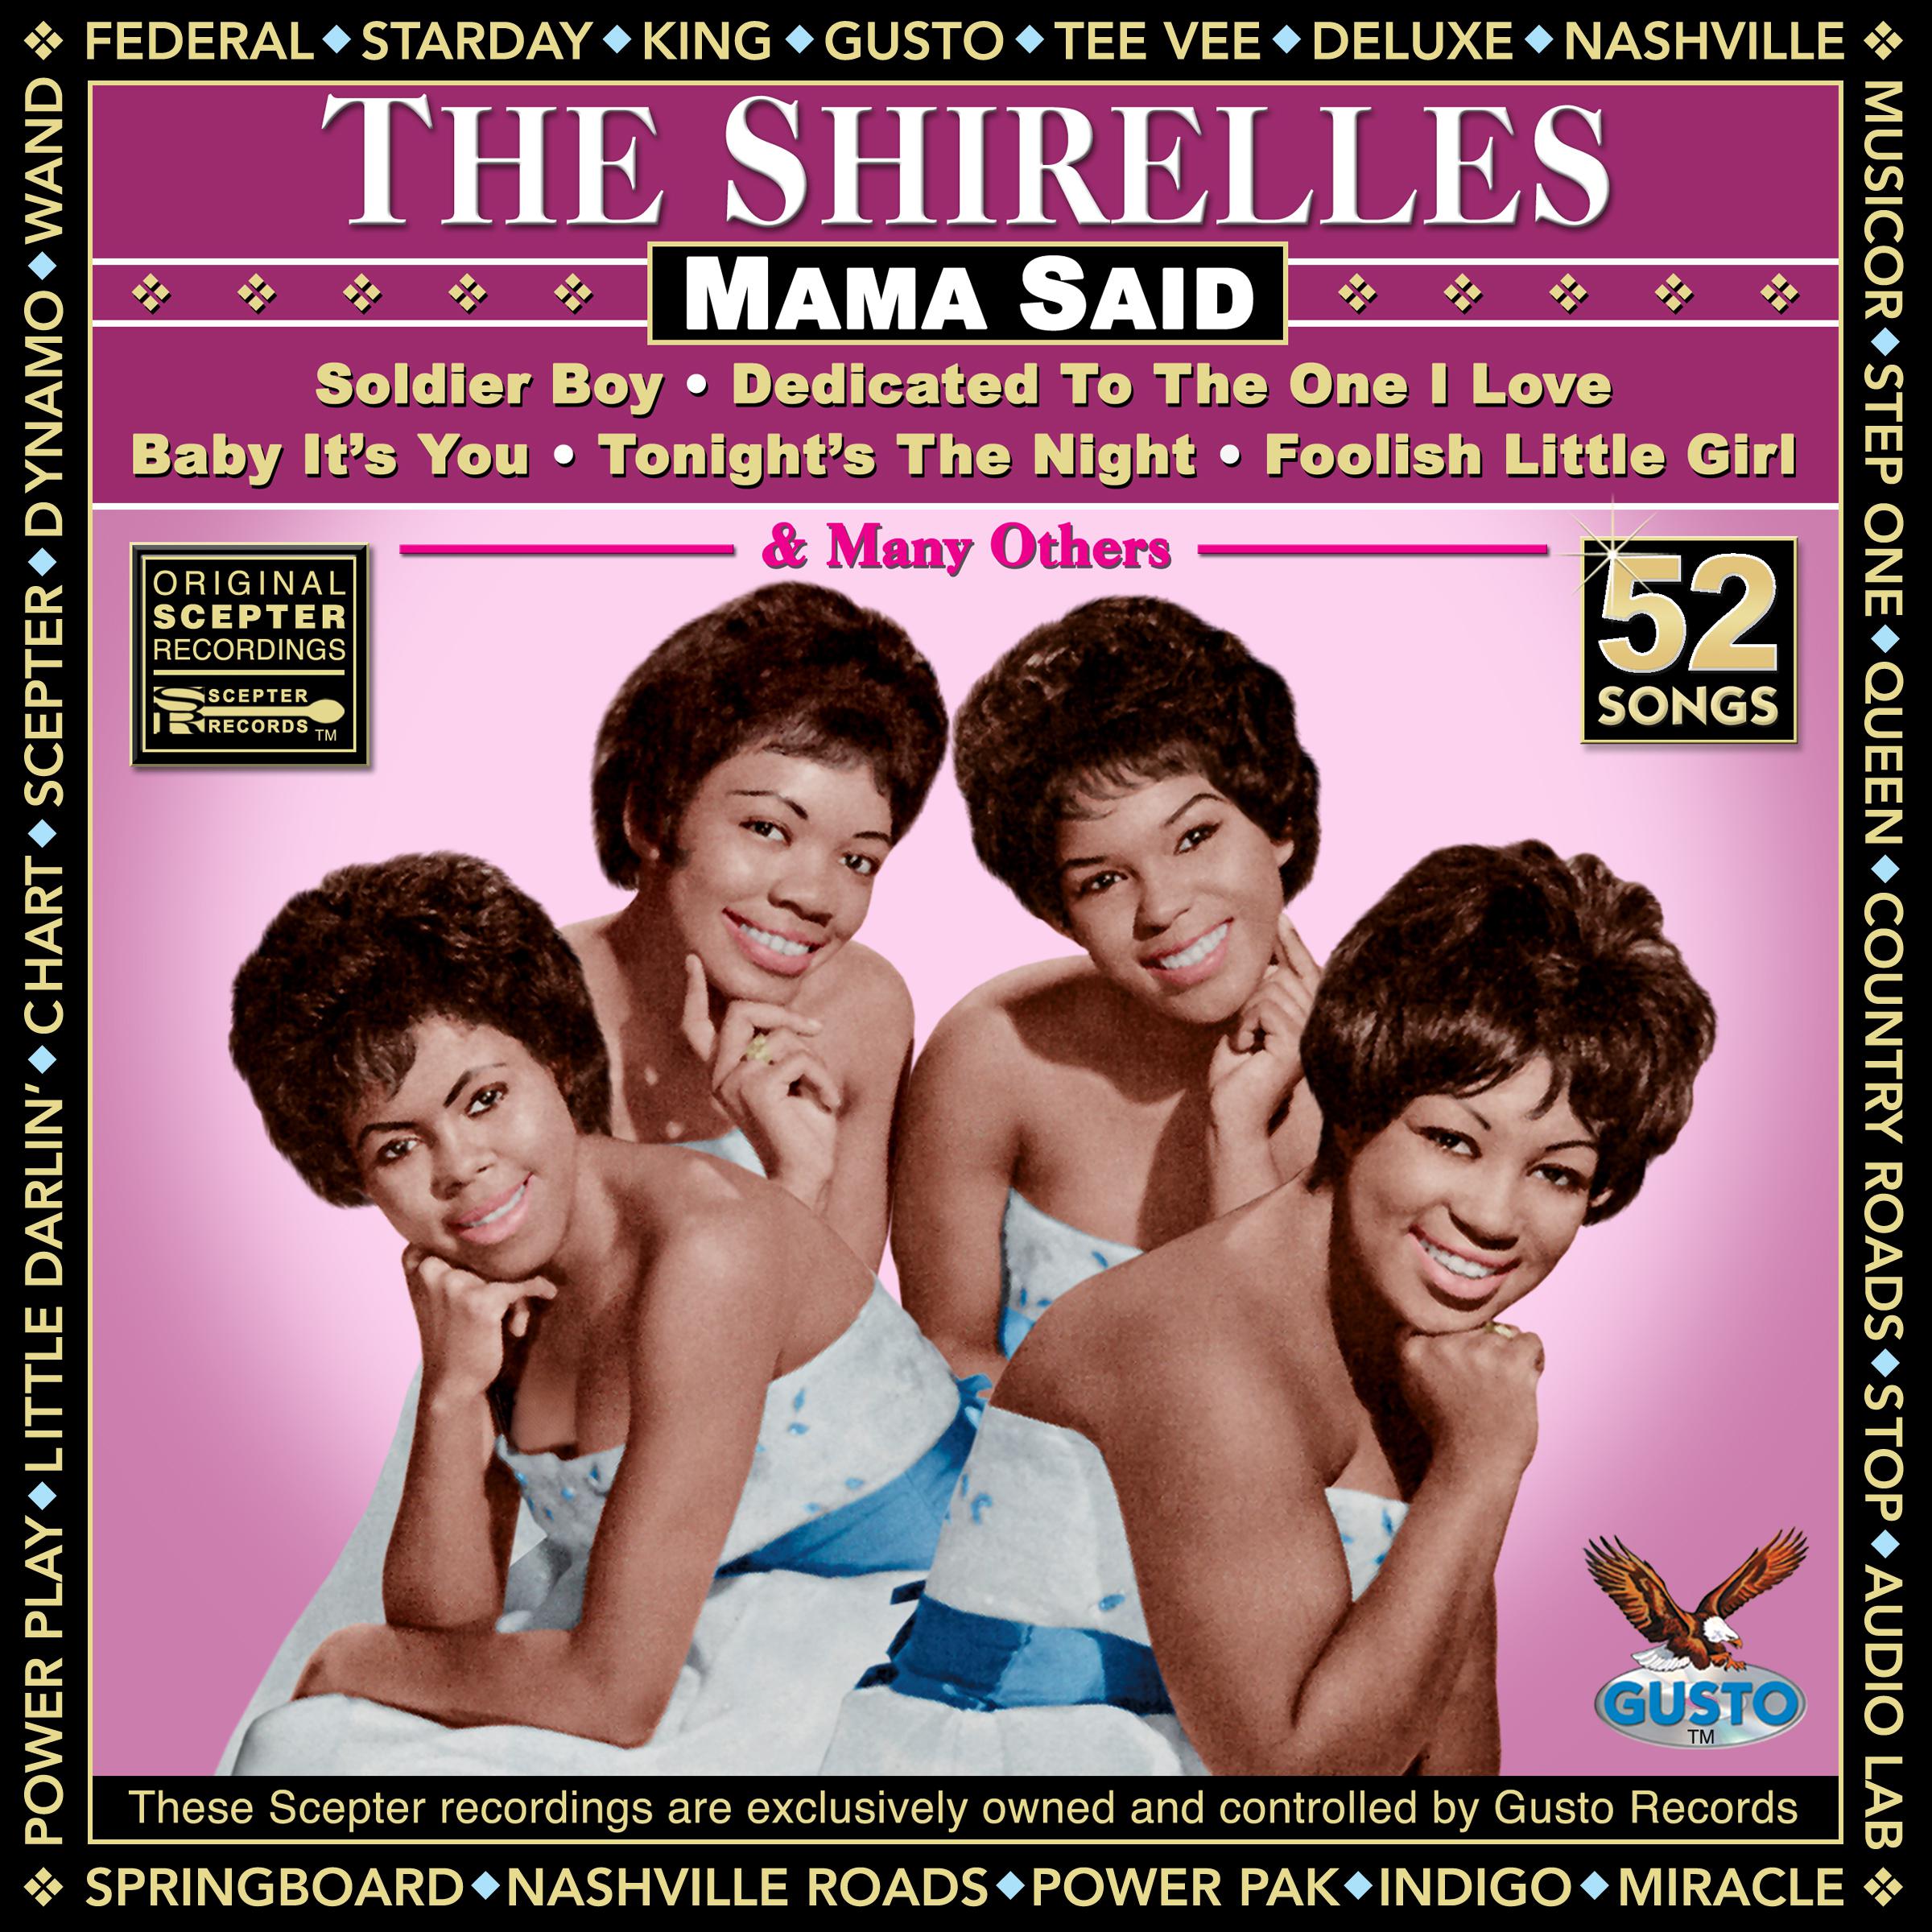 The Shirelles - Unlucky (Original Scepter Records Recording)